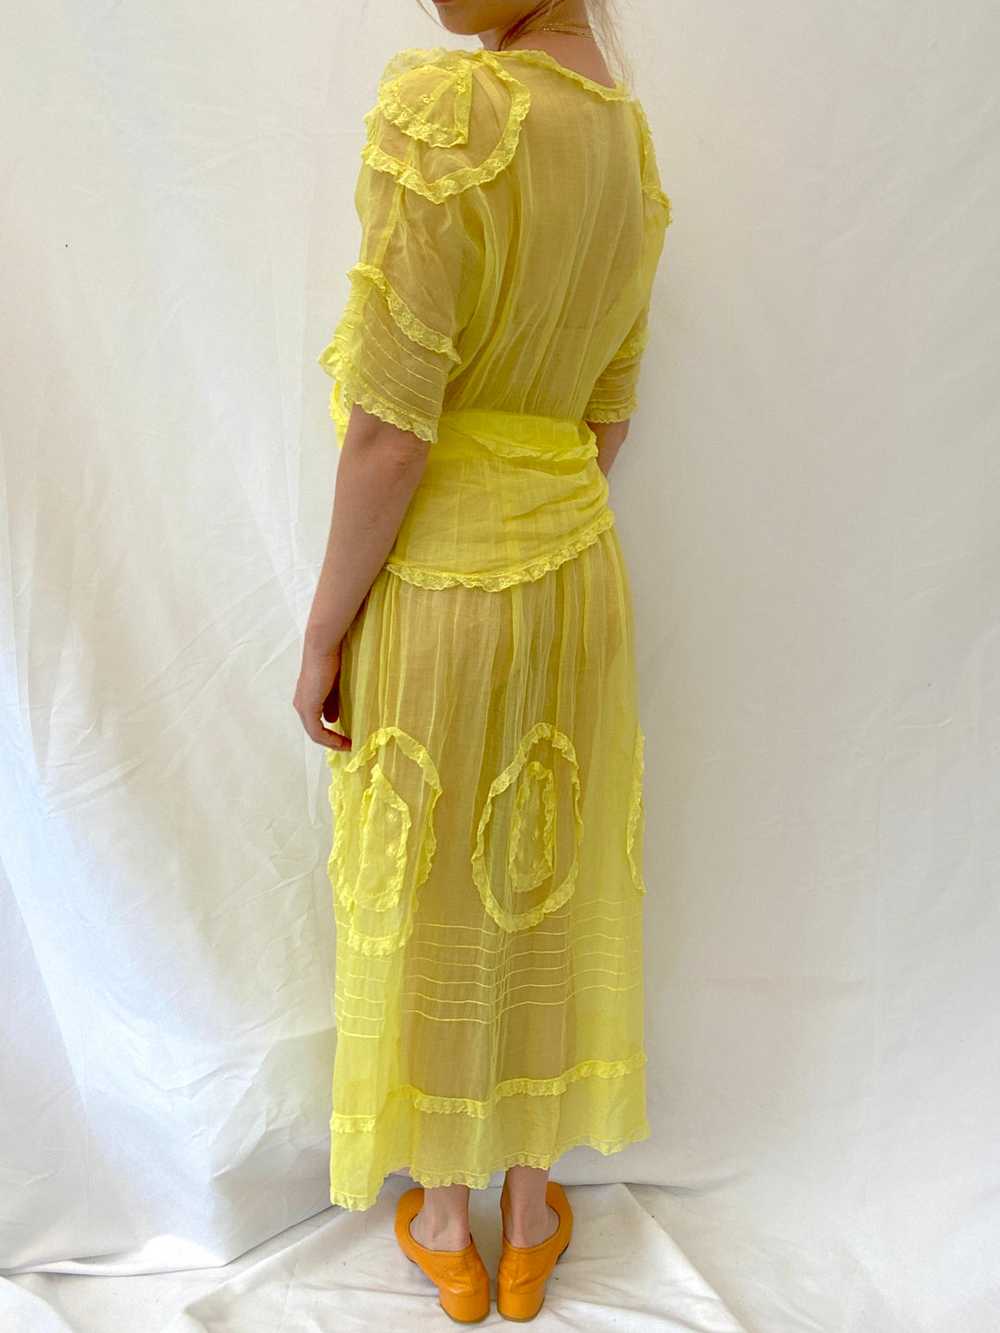 Hand Dyed Yellow Edwardian Organza Dress - image 6